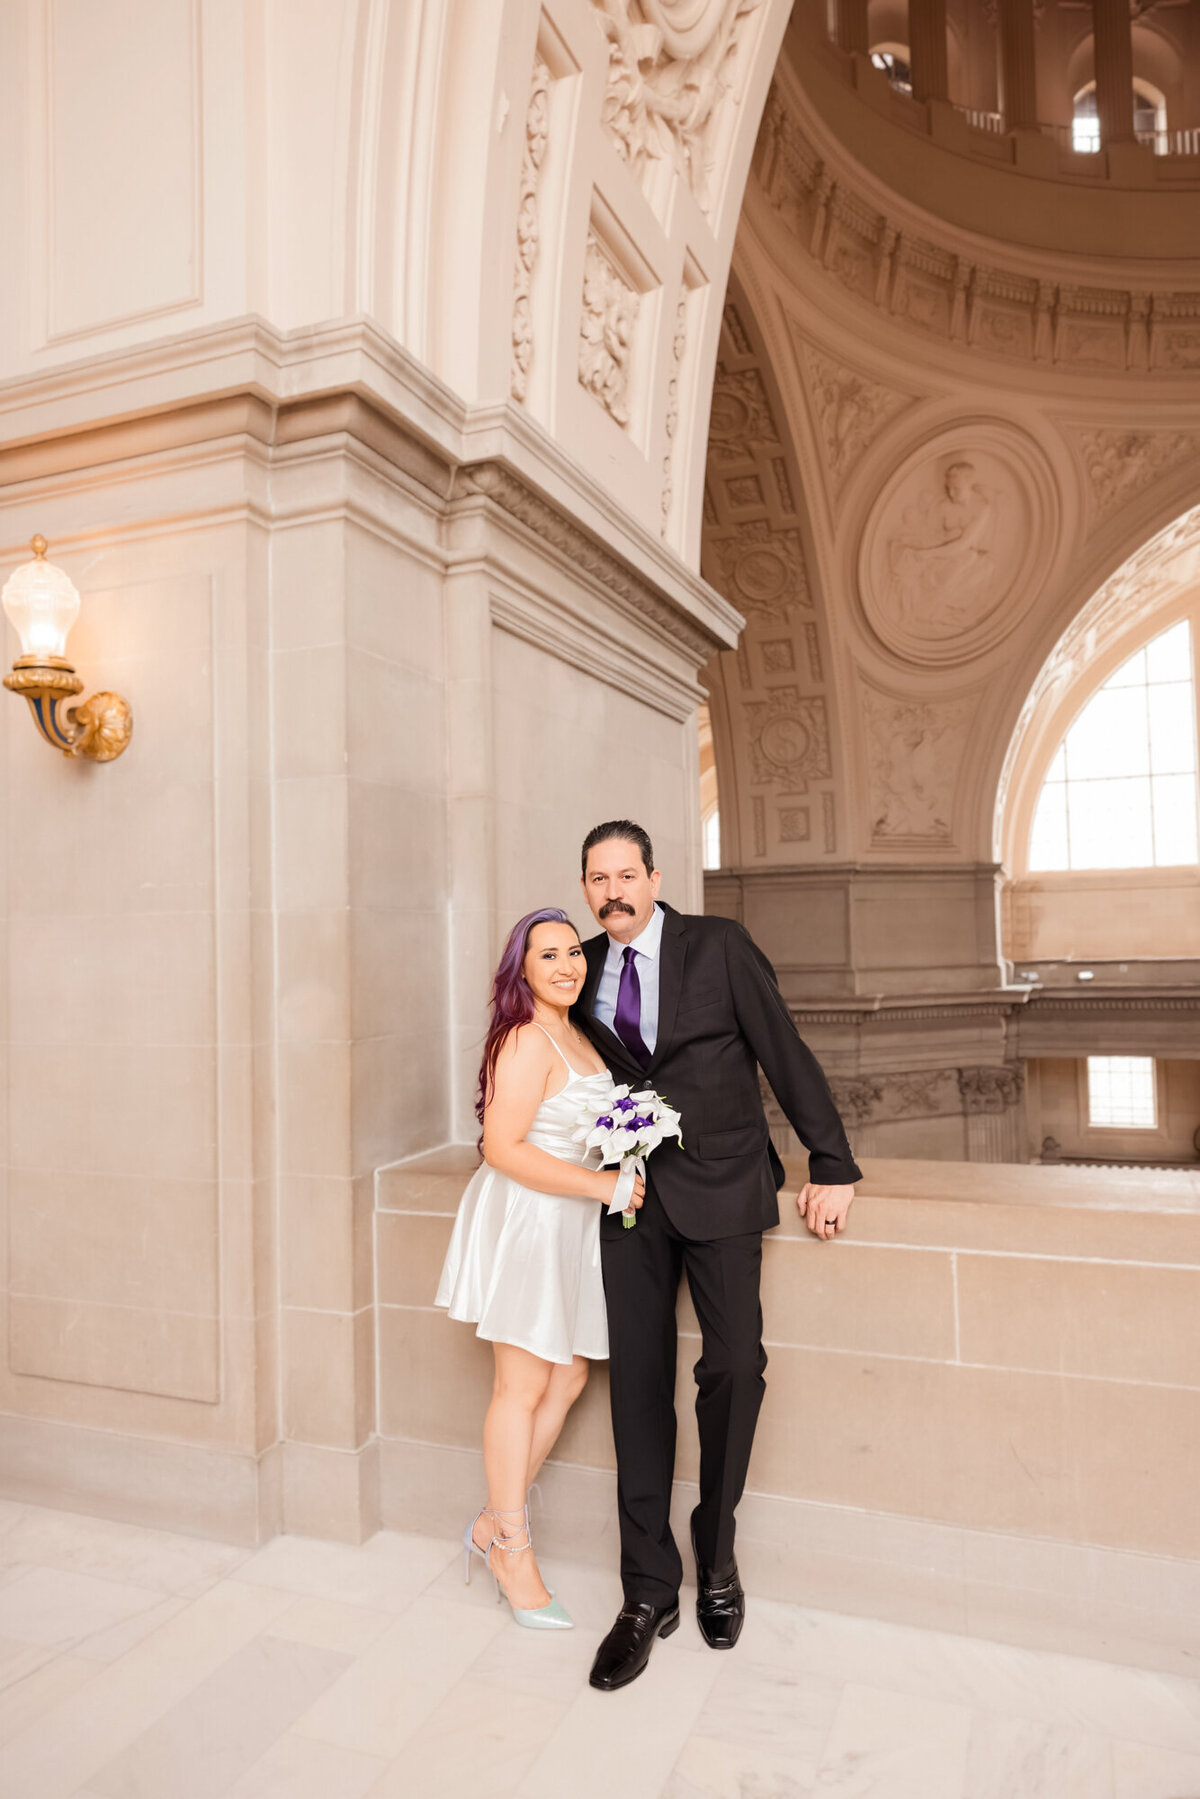 Eva and Tony-Wedding-San Francisco City Hall-Emily Pillon Photography-S-062223-22